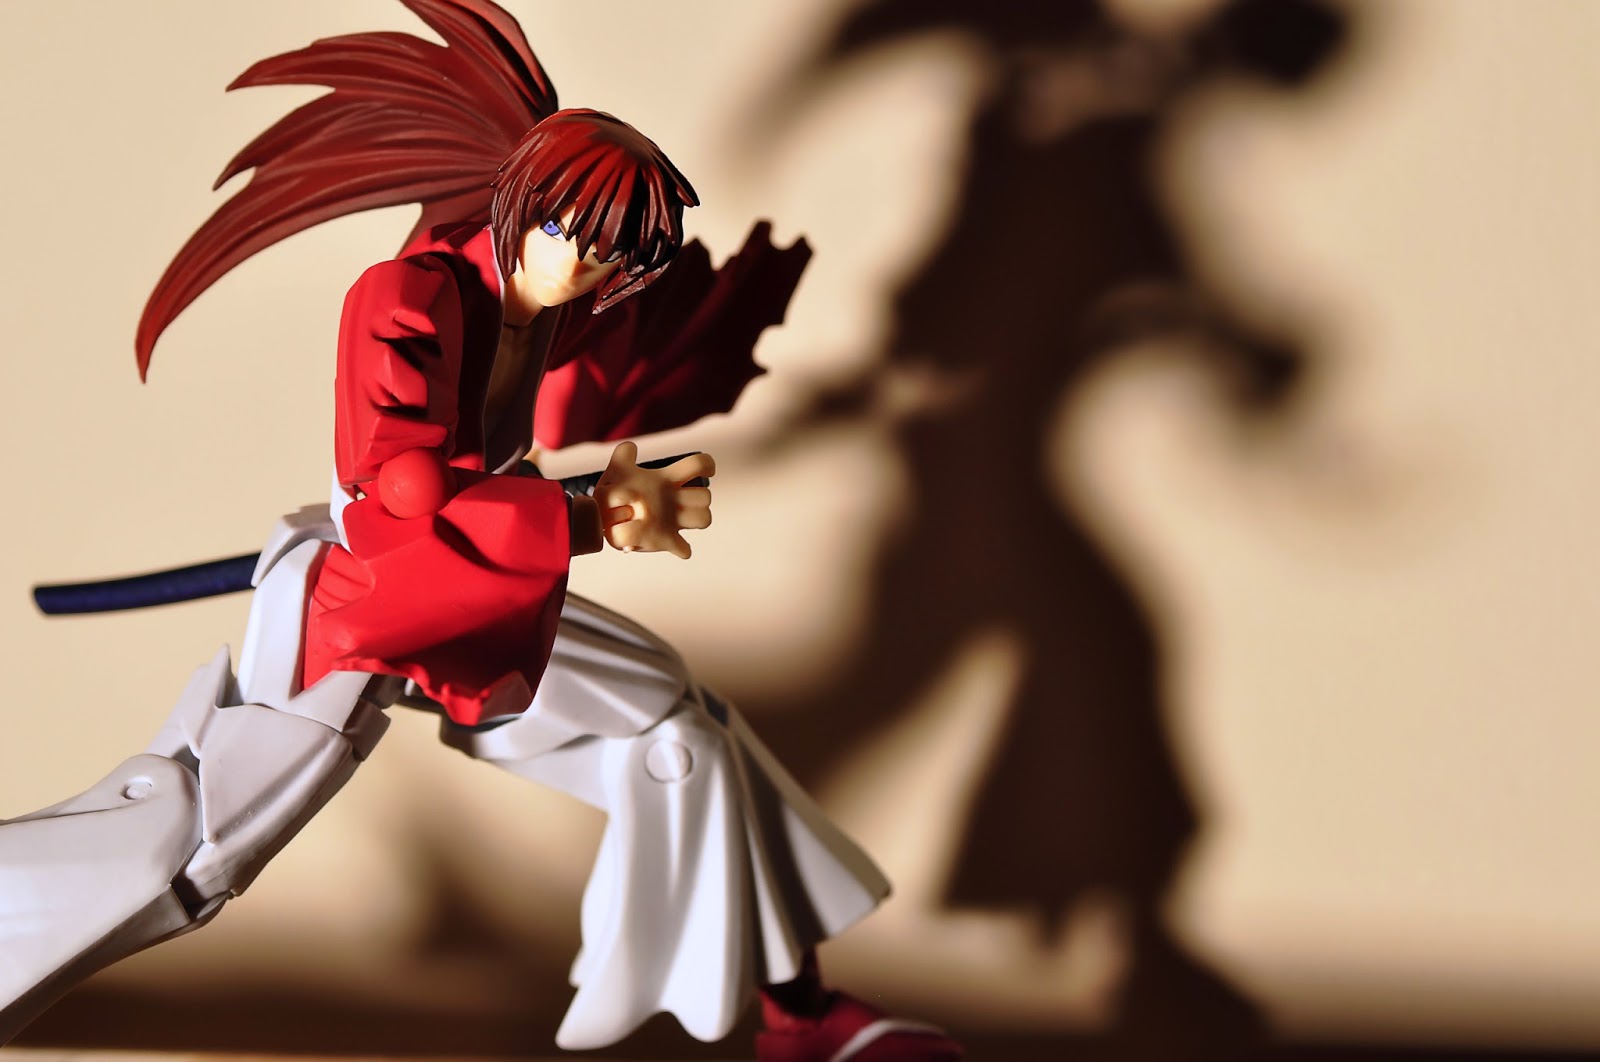 Rurouni Kenshin Samurai X Hd Pictures Wallpaper Gambar Lucu Terbaru Cartoon Animation Pictures